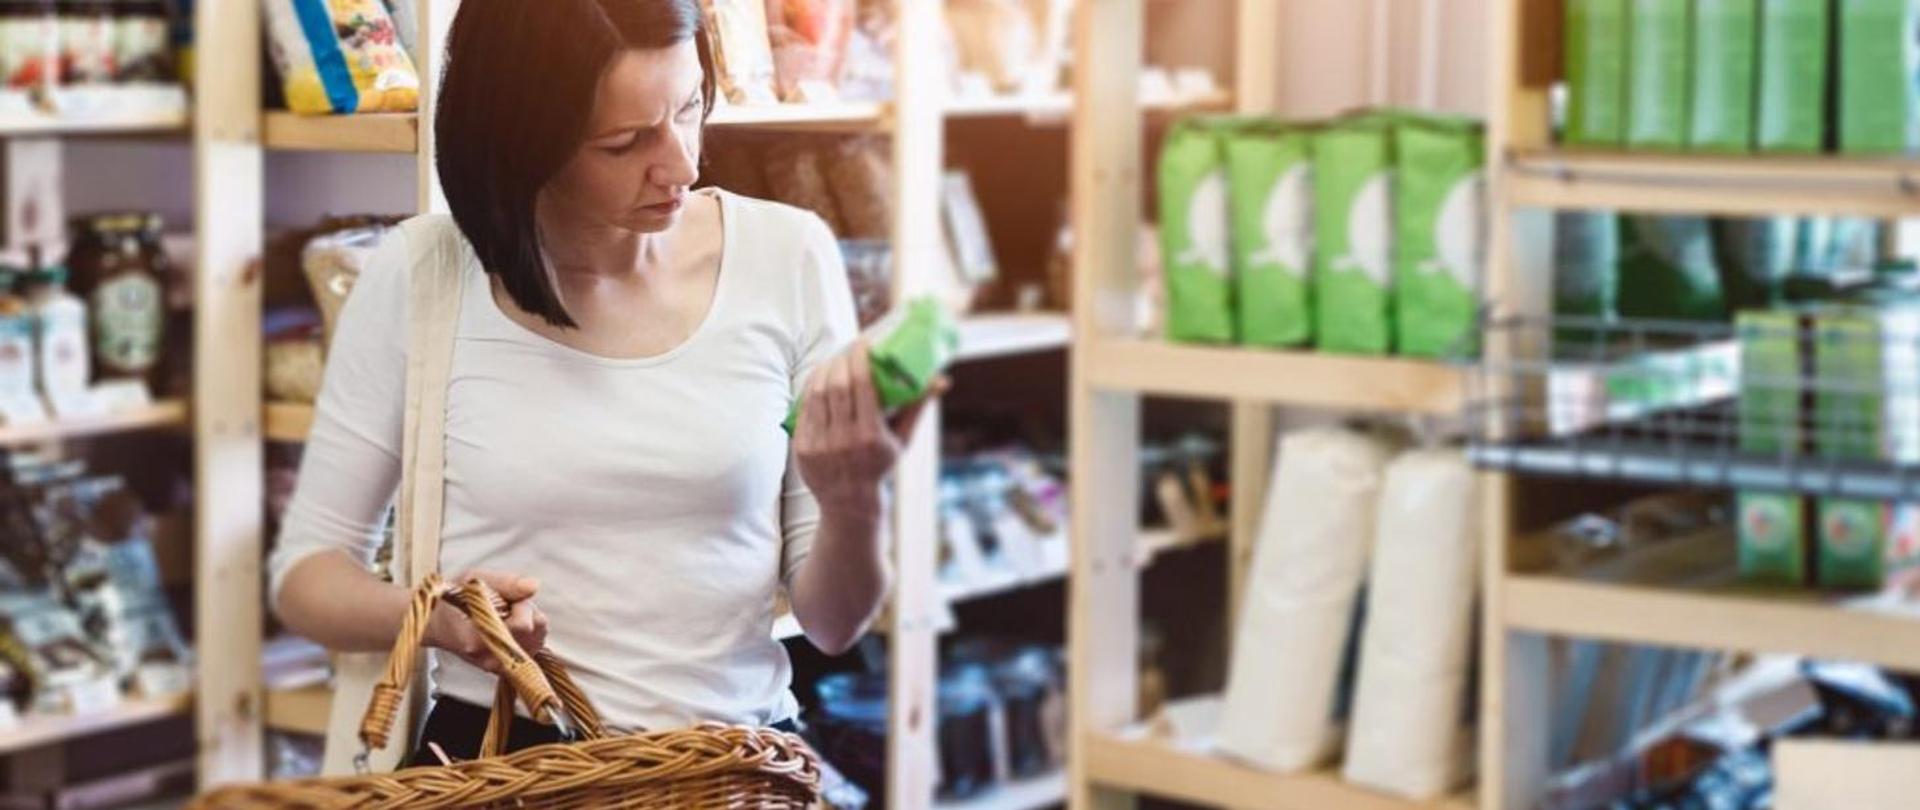 Kobieta robiąca zakupy w sklepie samoobsługowym. W prawej ręce trzyma wiklinowy kosz. W tle rozmyte drewniane półki sklepowe.